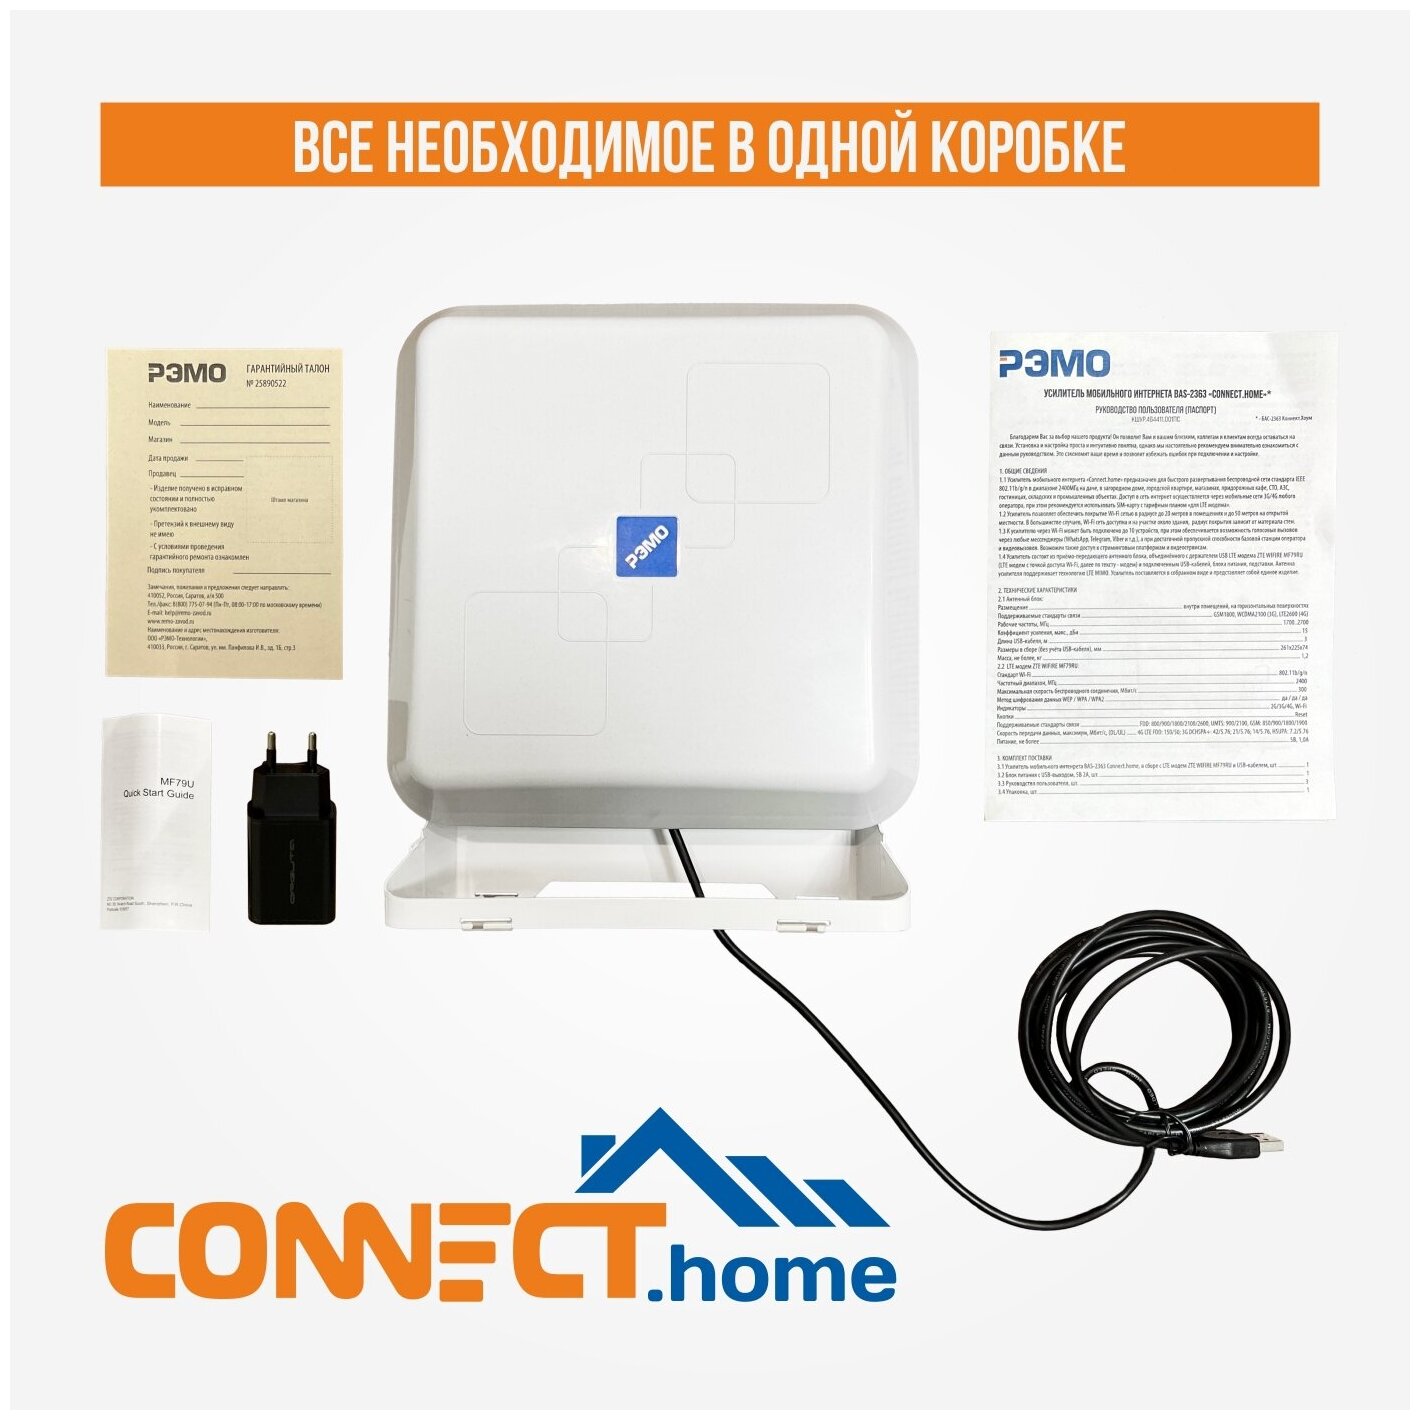 Готовый комплект для усиления мобильного интернета РЭМО BAS2363 "CONNECTHome" интернет на даче за городом/для сложных условий приема